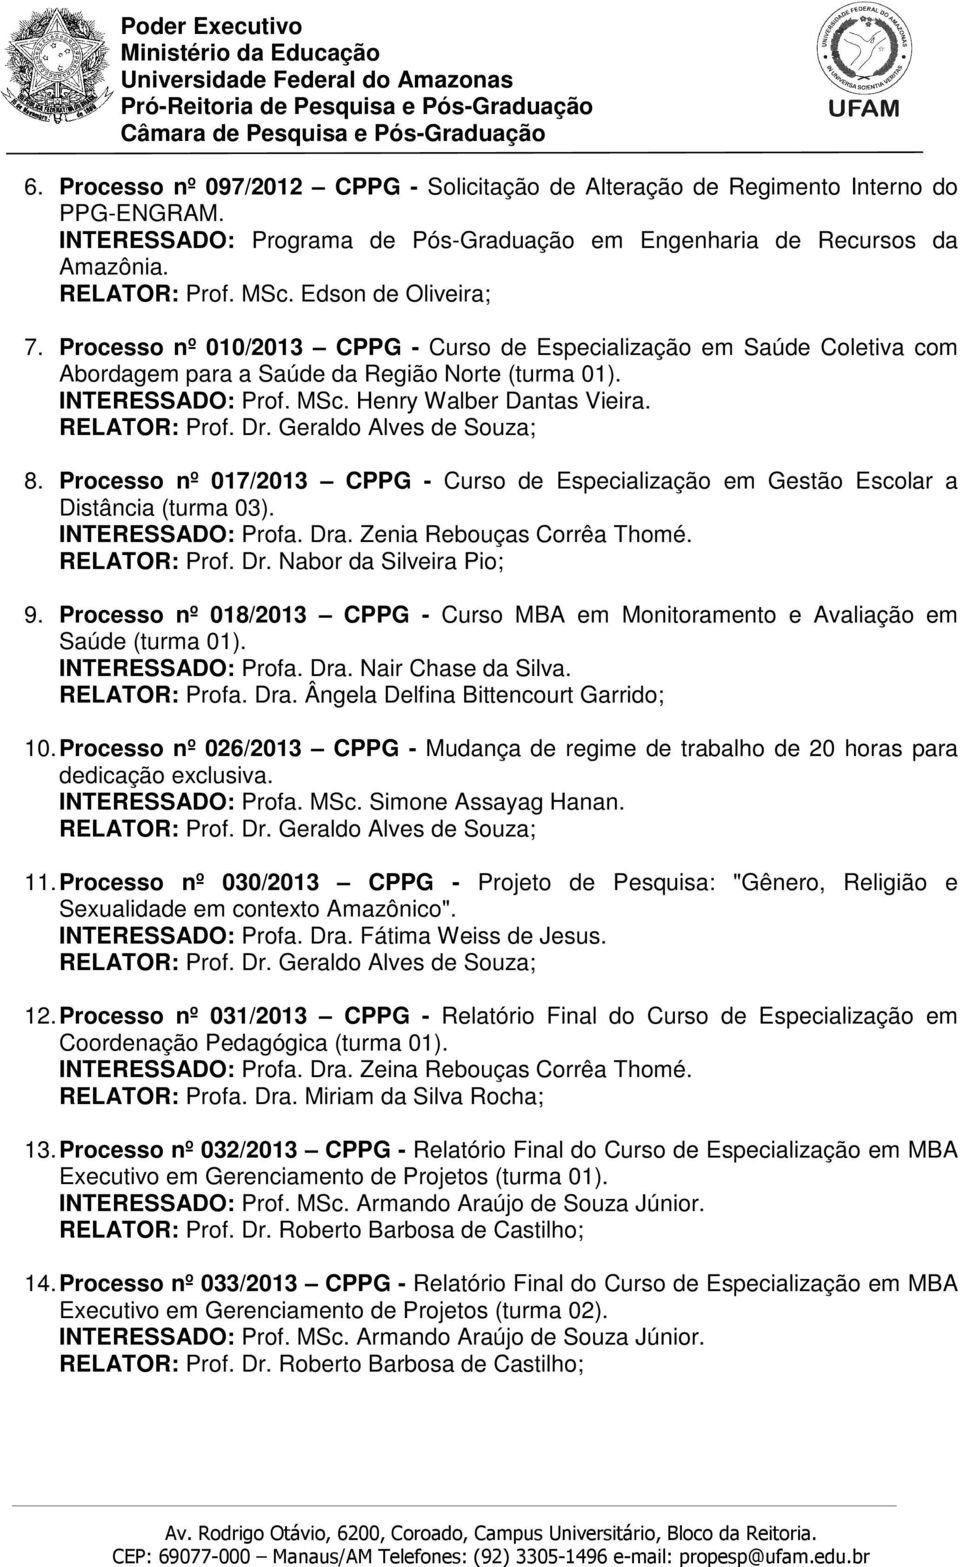 Processo nº 017/2013 CPPG - Curso de Especialização em Gestão Escolar a Distância (turma 03). INTERESSADO: Profa. Dra. Zenia Rebouças Corrêa Thomé. 9.